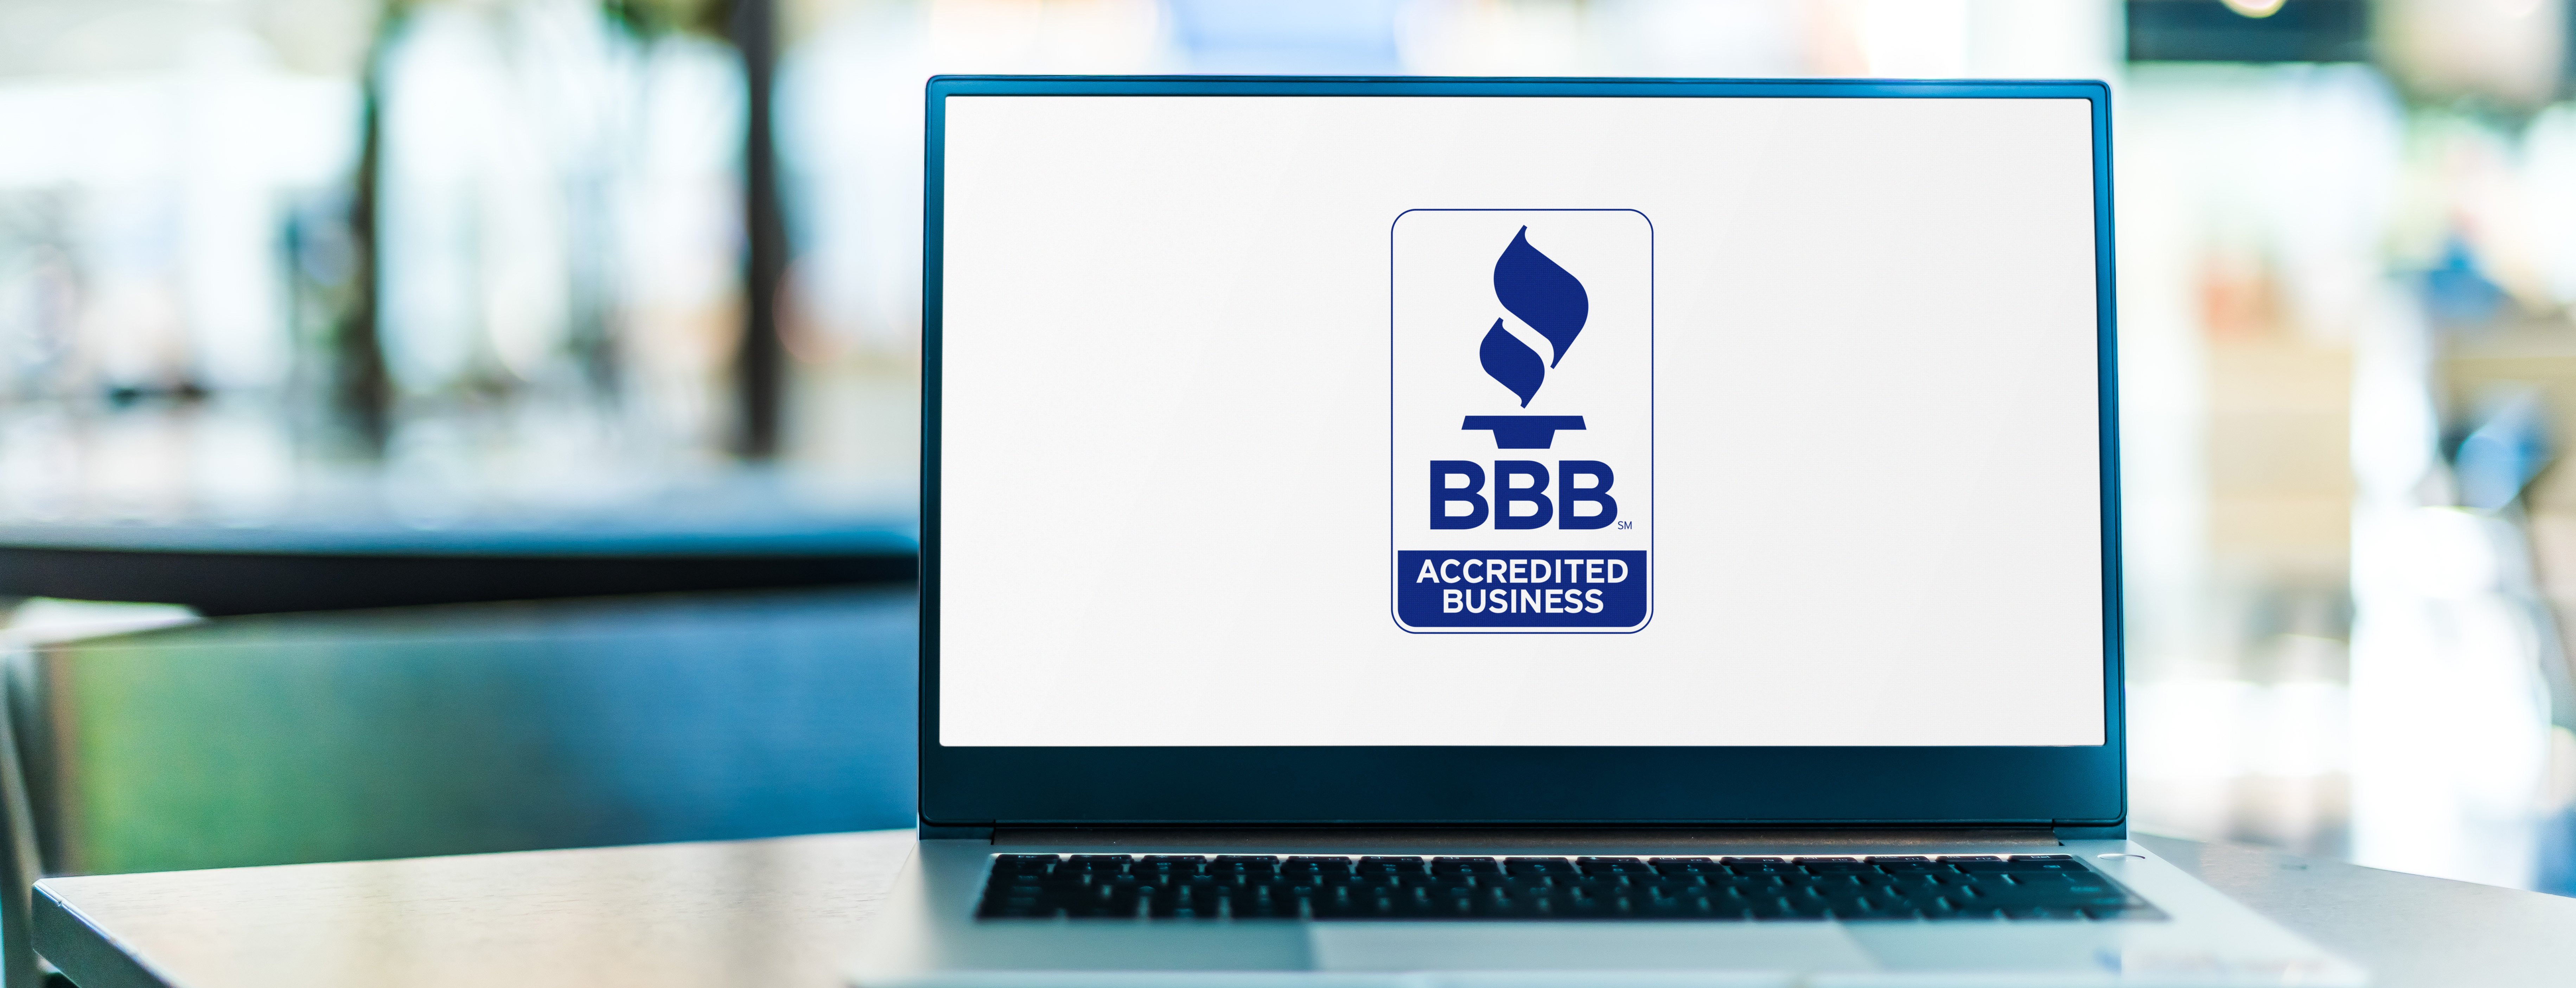 BBB logo displayed on a laptop.